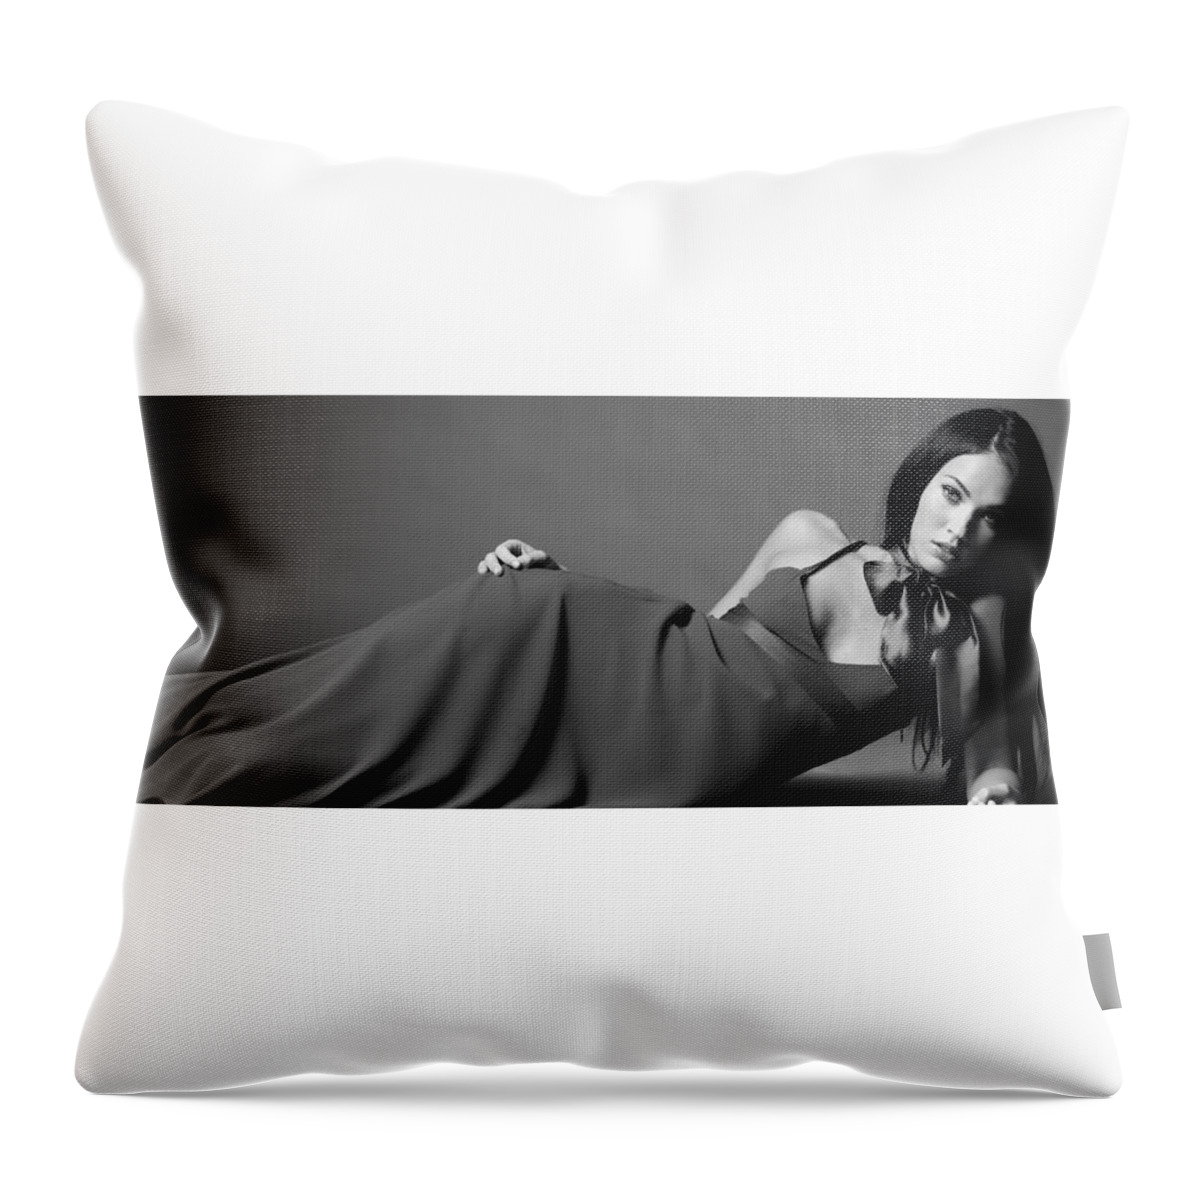 Megan Fox Throw Pillow featuring the digital art Megan Fox #10 by Super Lovely